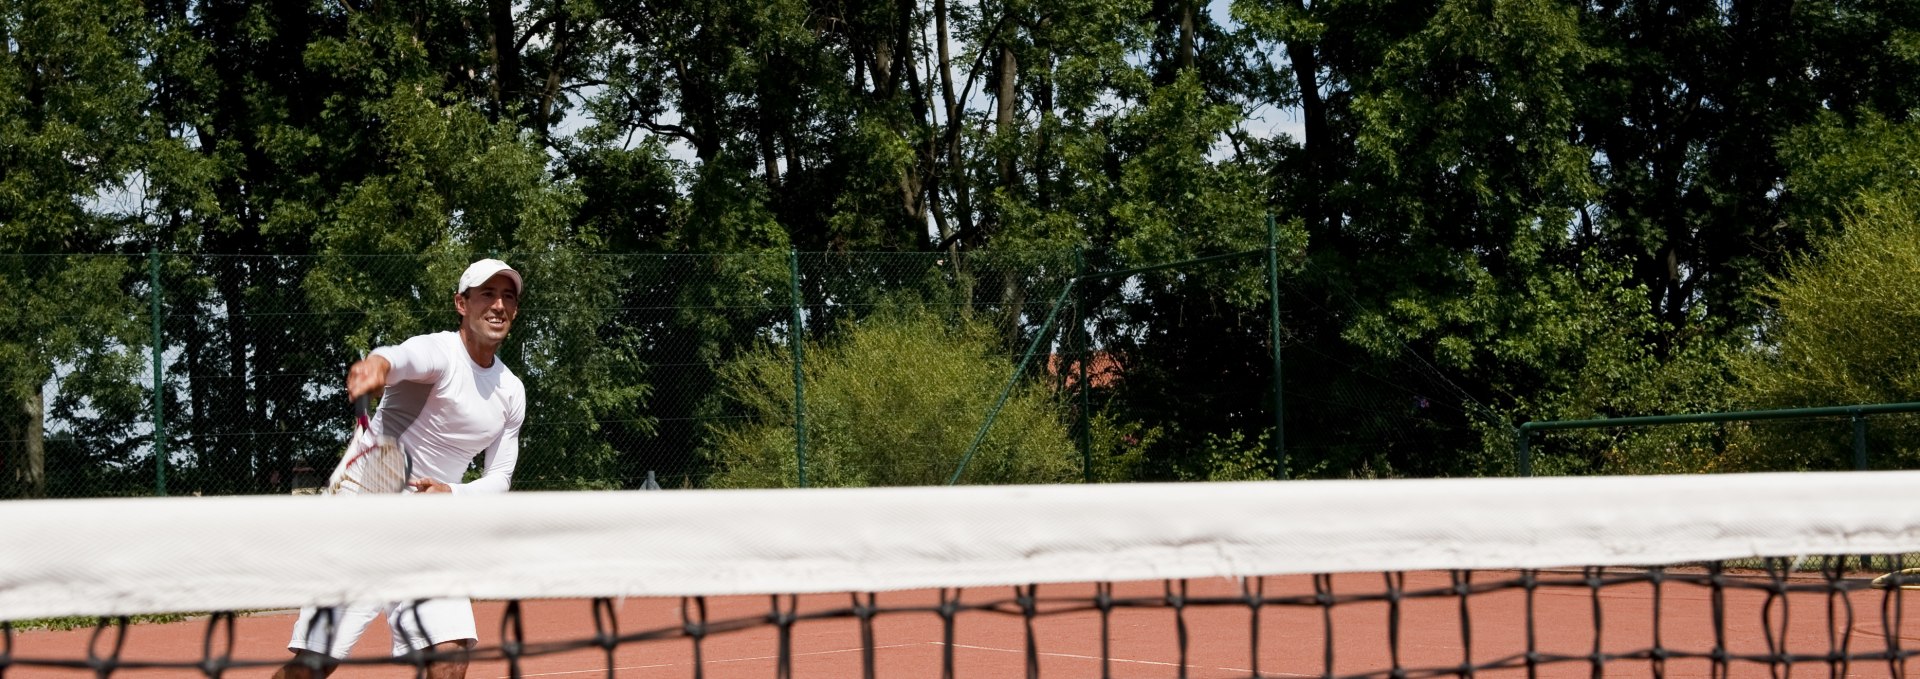 Leiter der Tennisakademie Fleesensee - Berni Nater, © GOLF Fleesensee